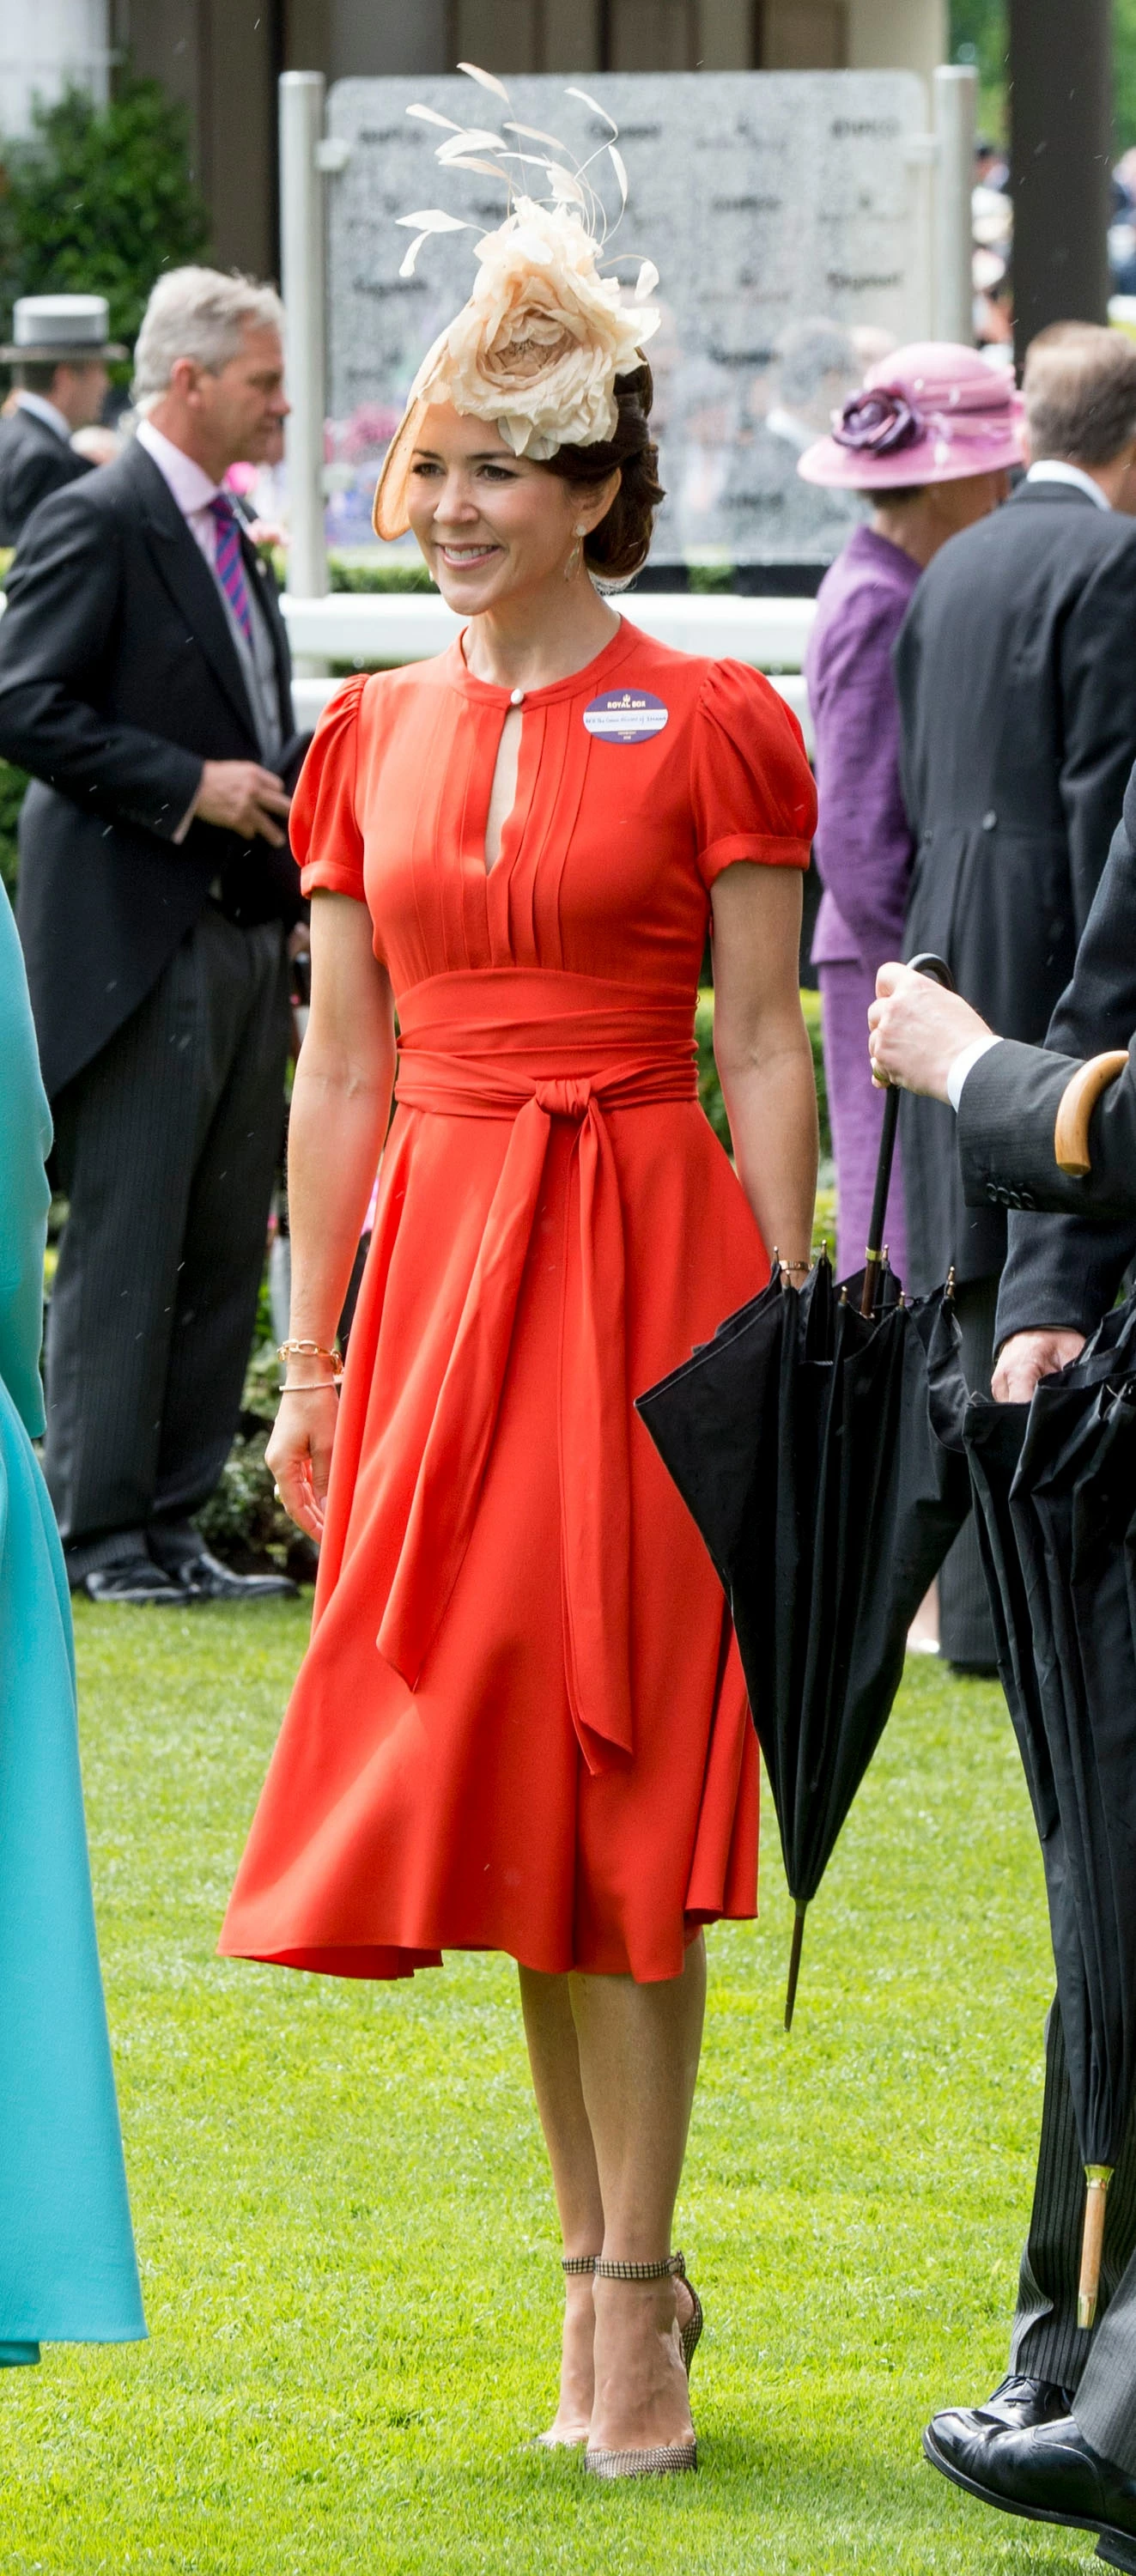 Червень 2016 року.
Принцеса Мері відвідала Royal Ascot у яскраво-червоній сукні, бежевих туфлях на шпильці та у фасинаторі.